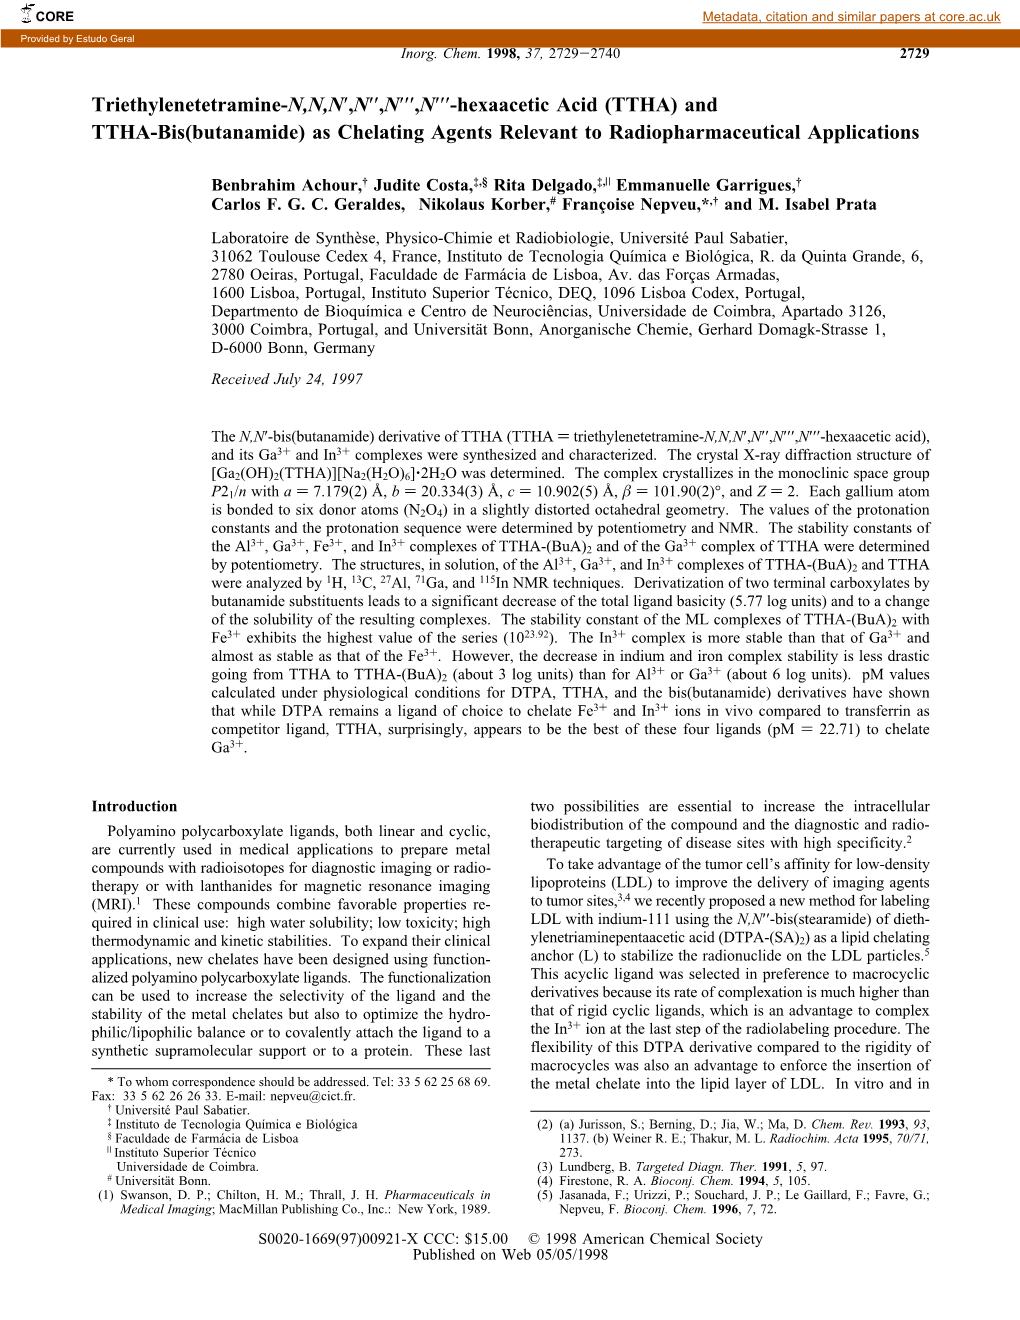 Triethylenetetramine-N,N,N′,N′′,N′′′,N′′′-Hexaacetic Acid (TTHA) and TTHA-Bis(Butanamide) As Chelating Agents Relevant to Radiopharmaceutical Applications